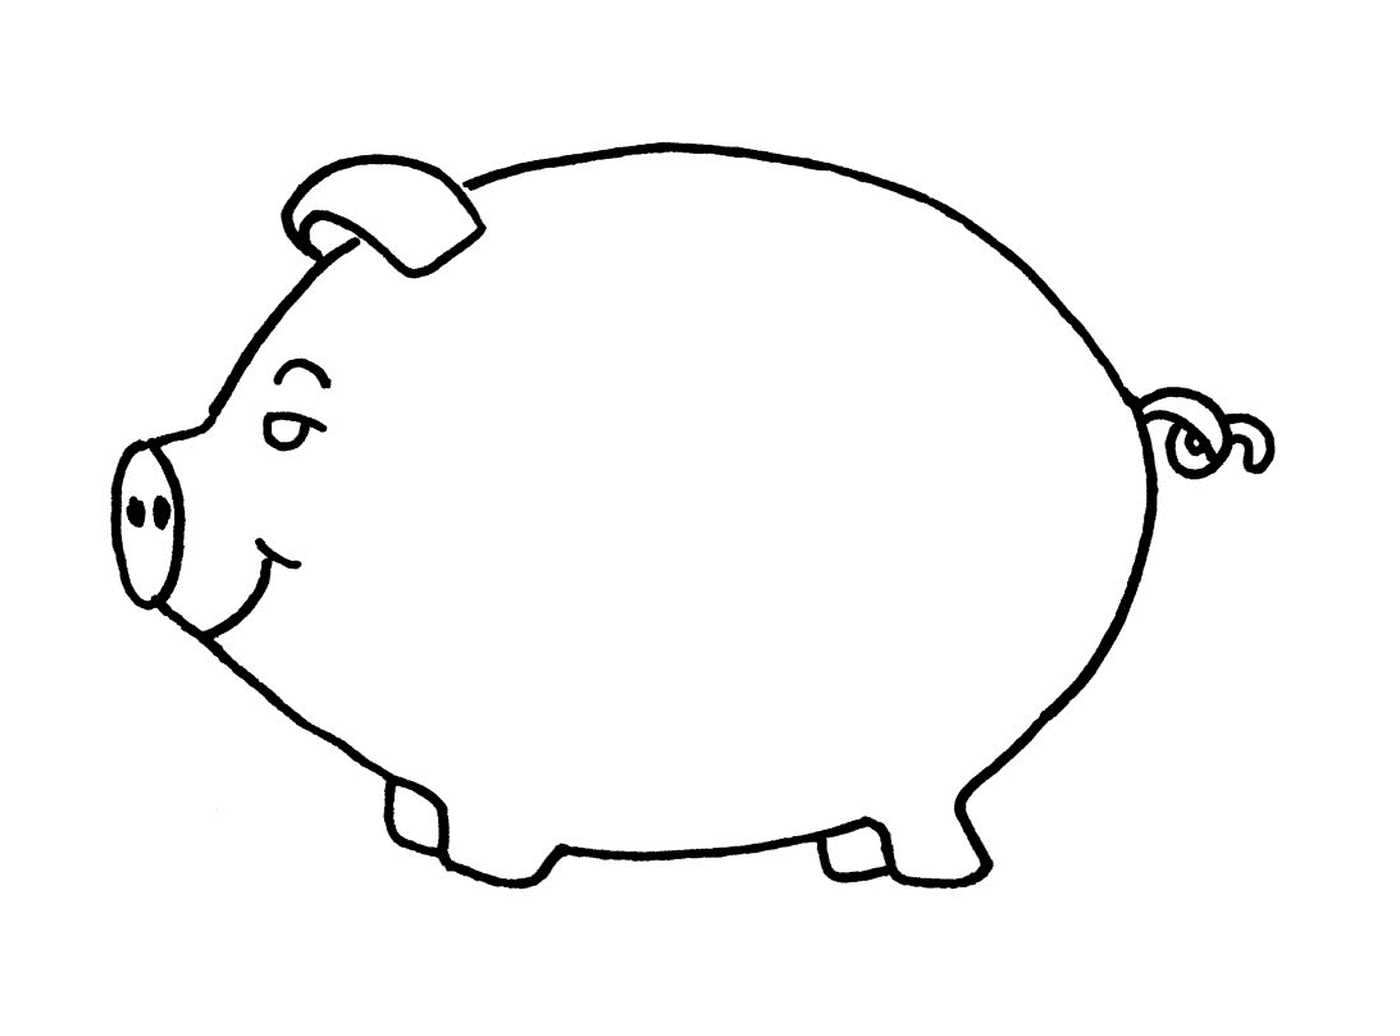  猪形猪头银行 